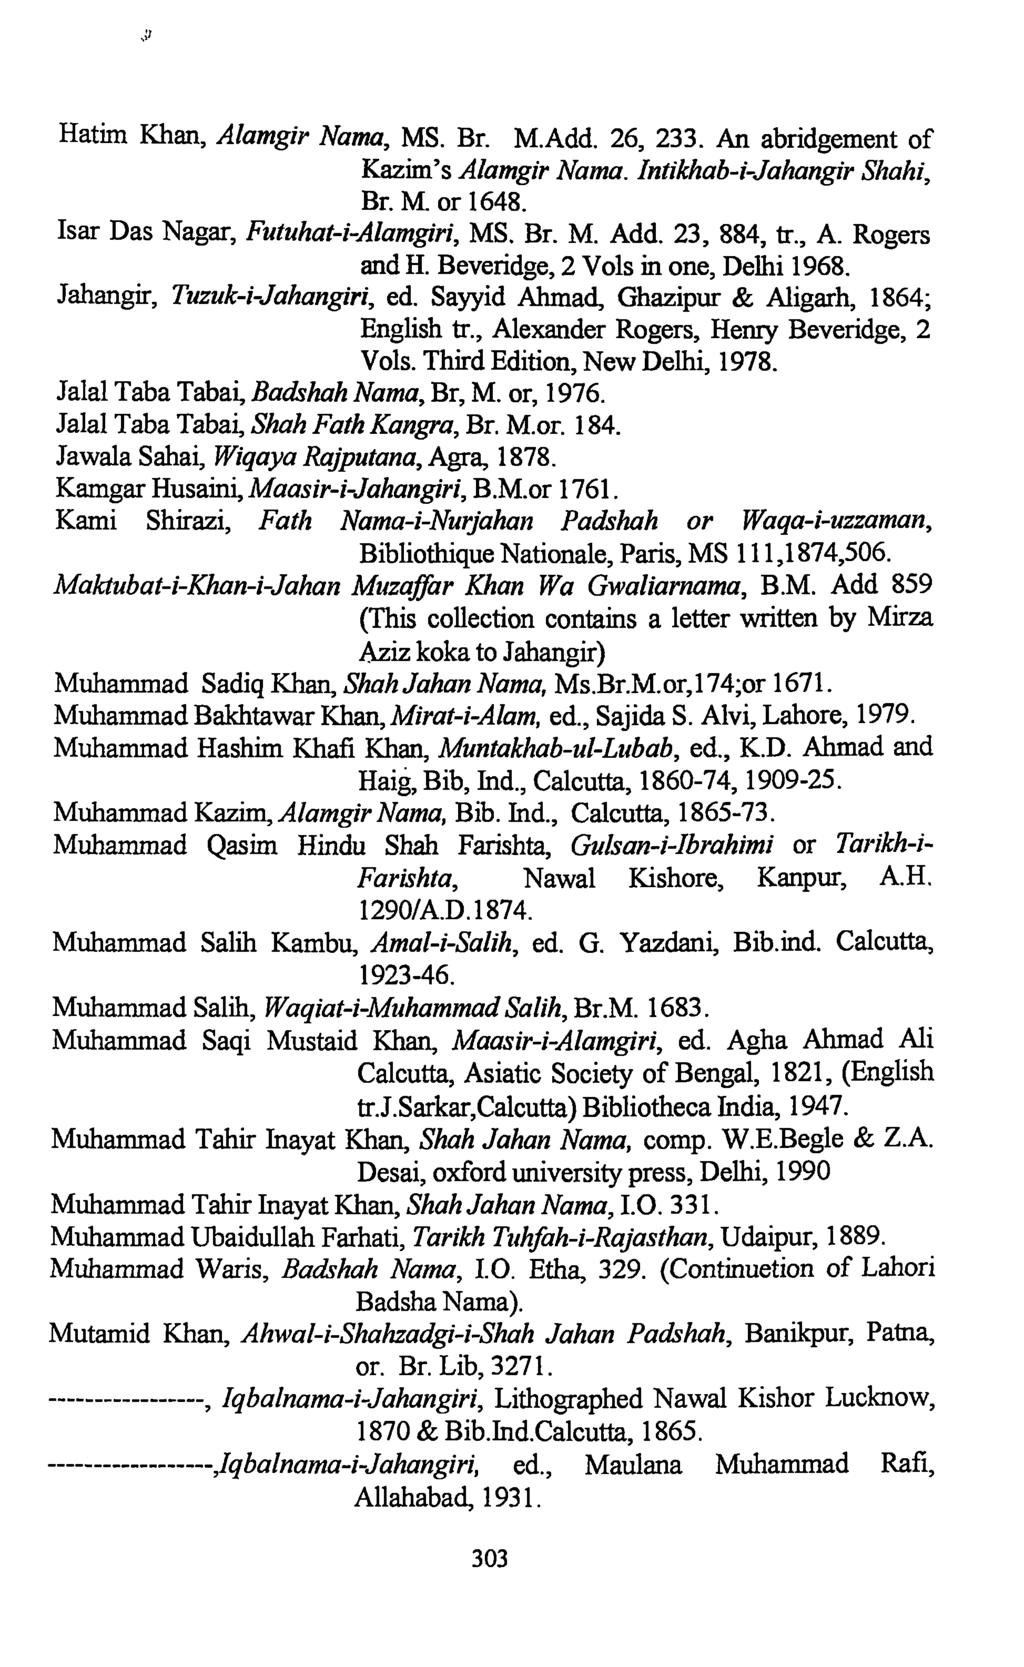 Hatim Khan, Alamgir Nairn, MS. Br. M.Add. 26, 233. An abridgement of Kazim's Alamgir Nama. Intikhab-i-Jahangir Shahi, Br. M. or 1648. Isar Das Nagar, Futuhat-i-Alamgiri, MS. Br. M. Add. 23, 884, tr.